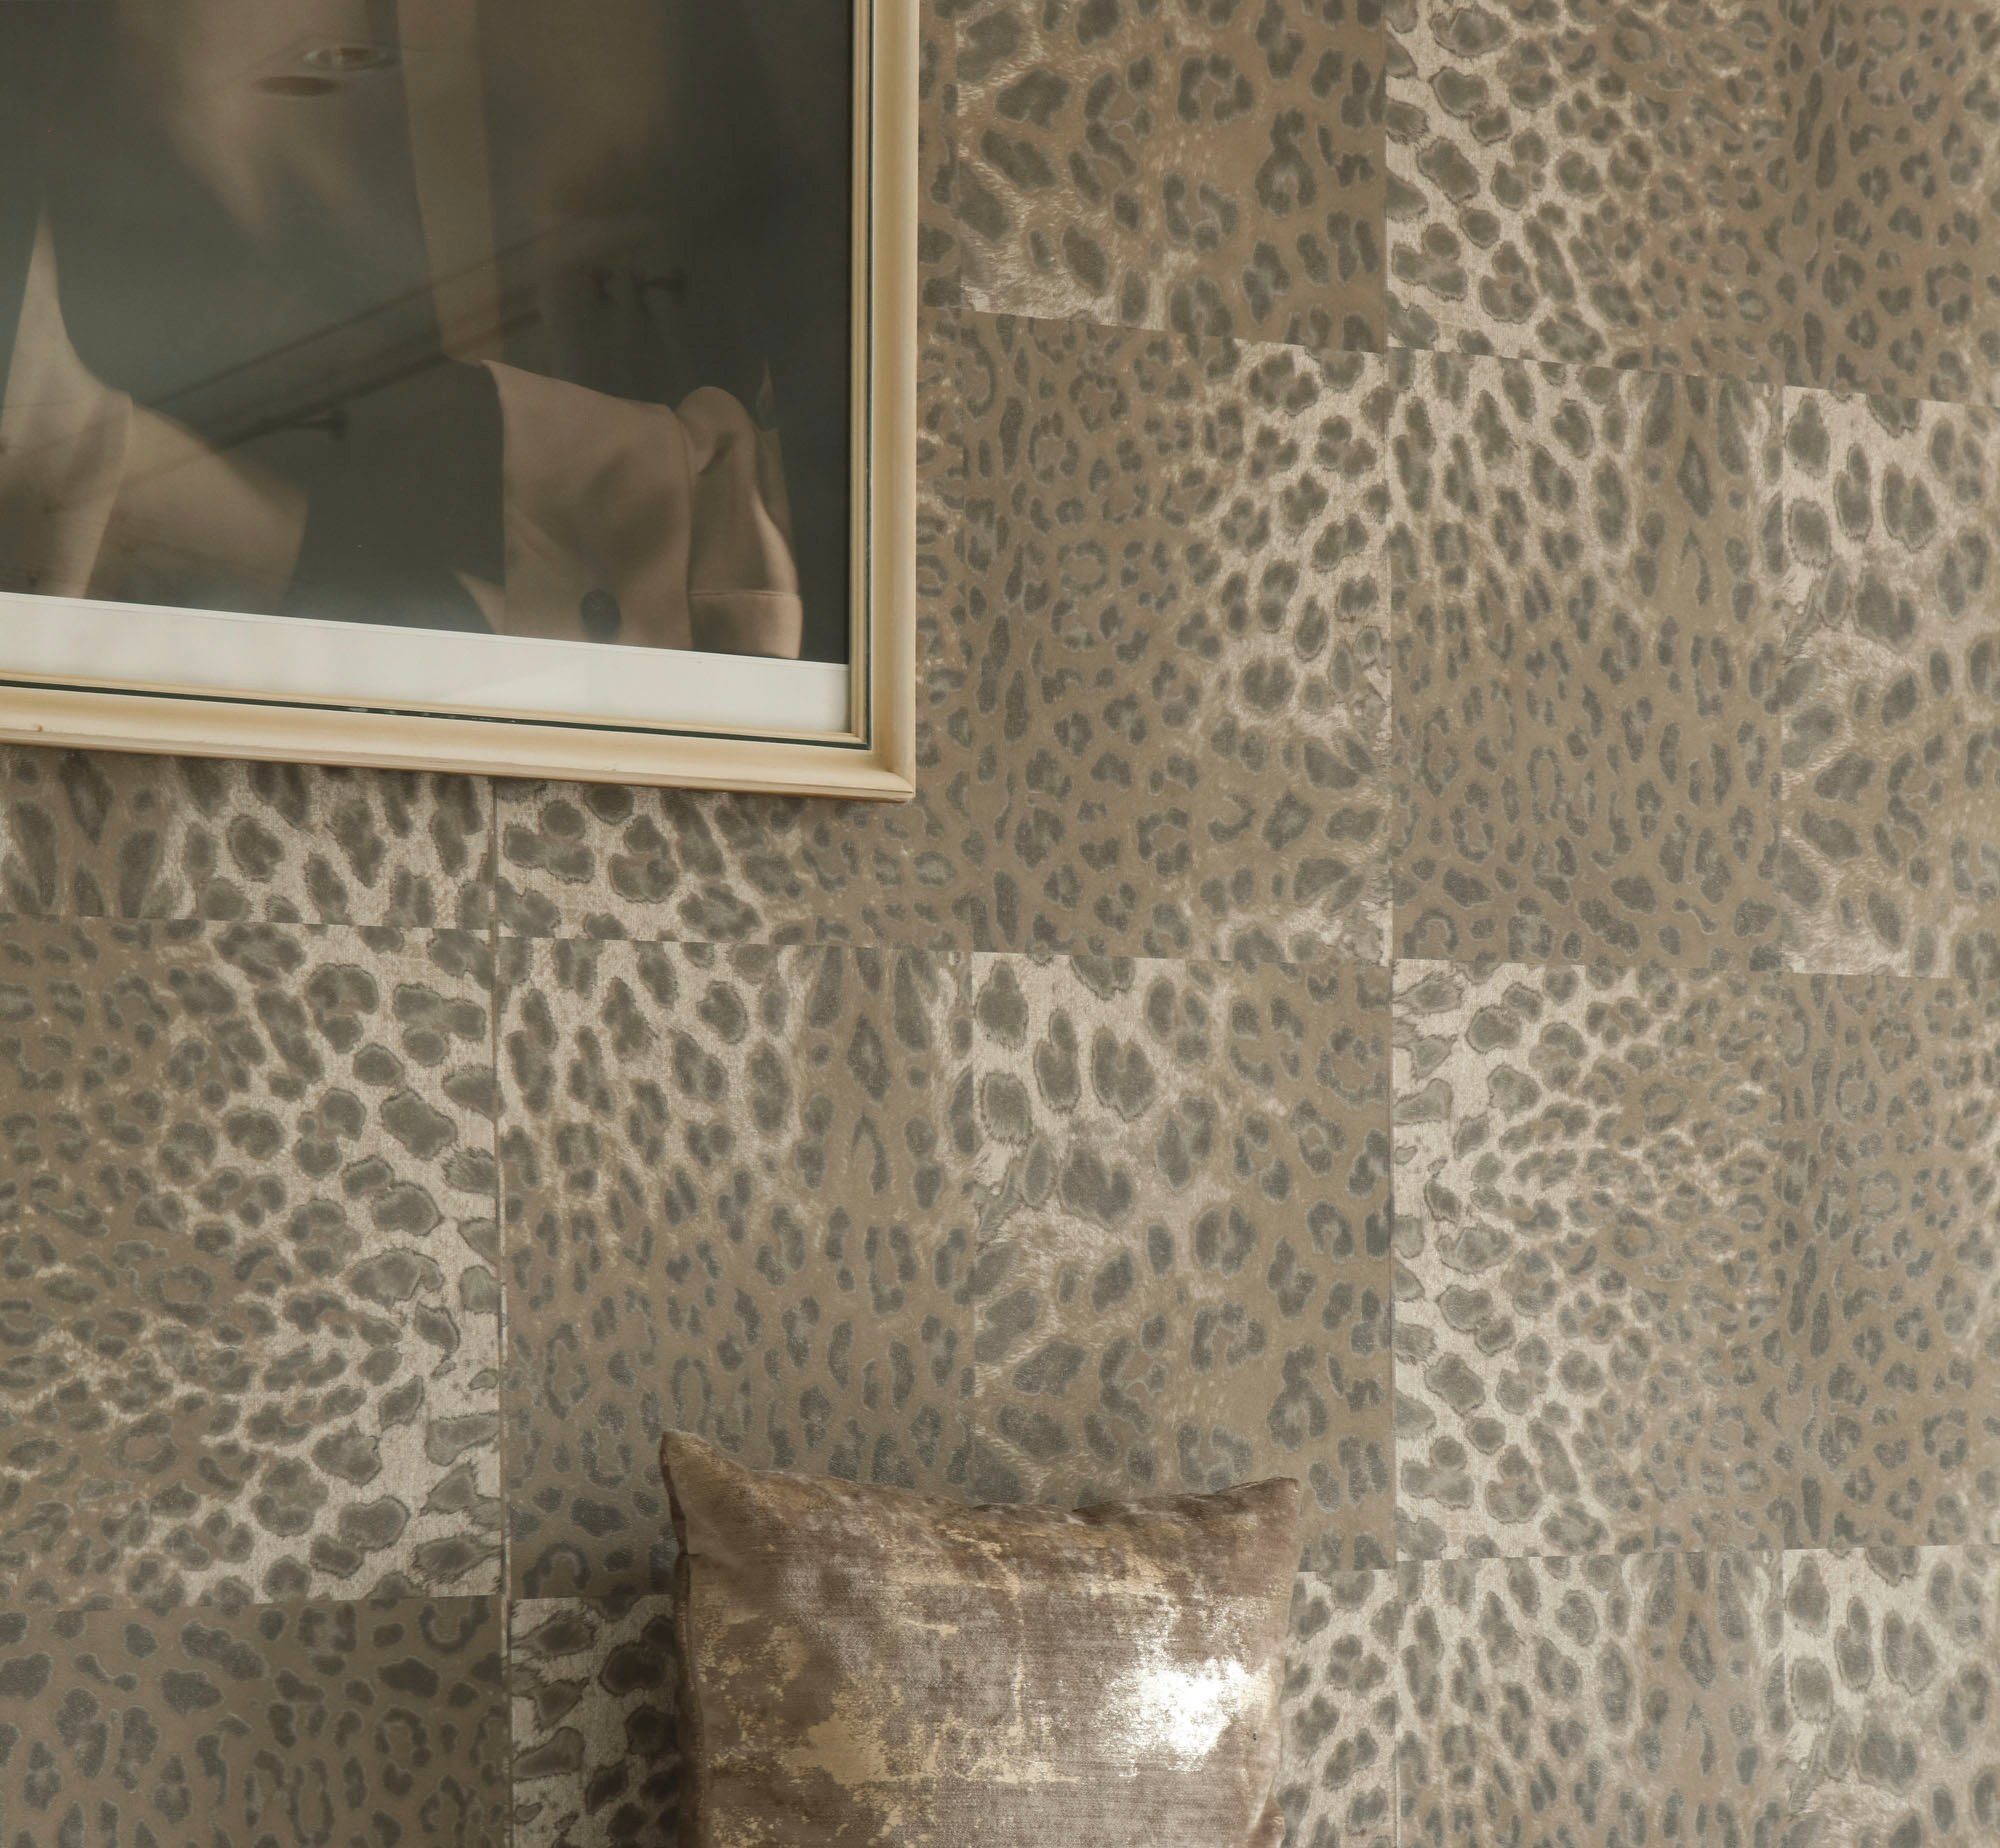 walls Tapete living gemustert, animal Desert Lodge, braun/beige Leopardenmuster print, strukturiert, Fellimitat, Vliestapete